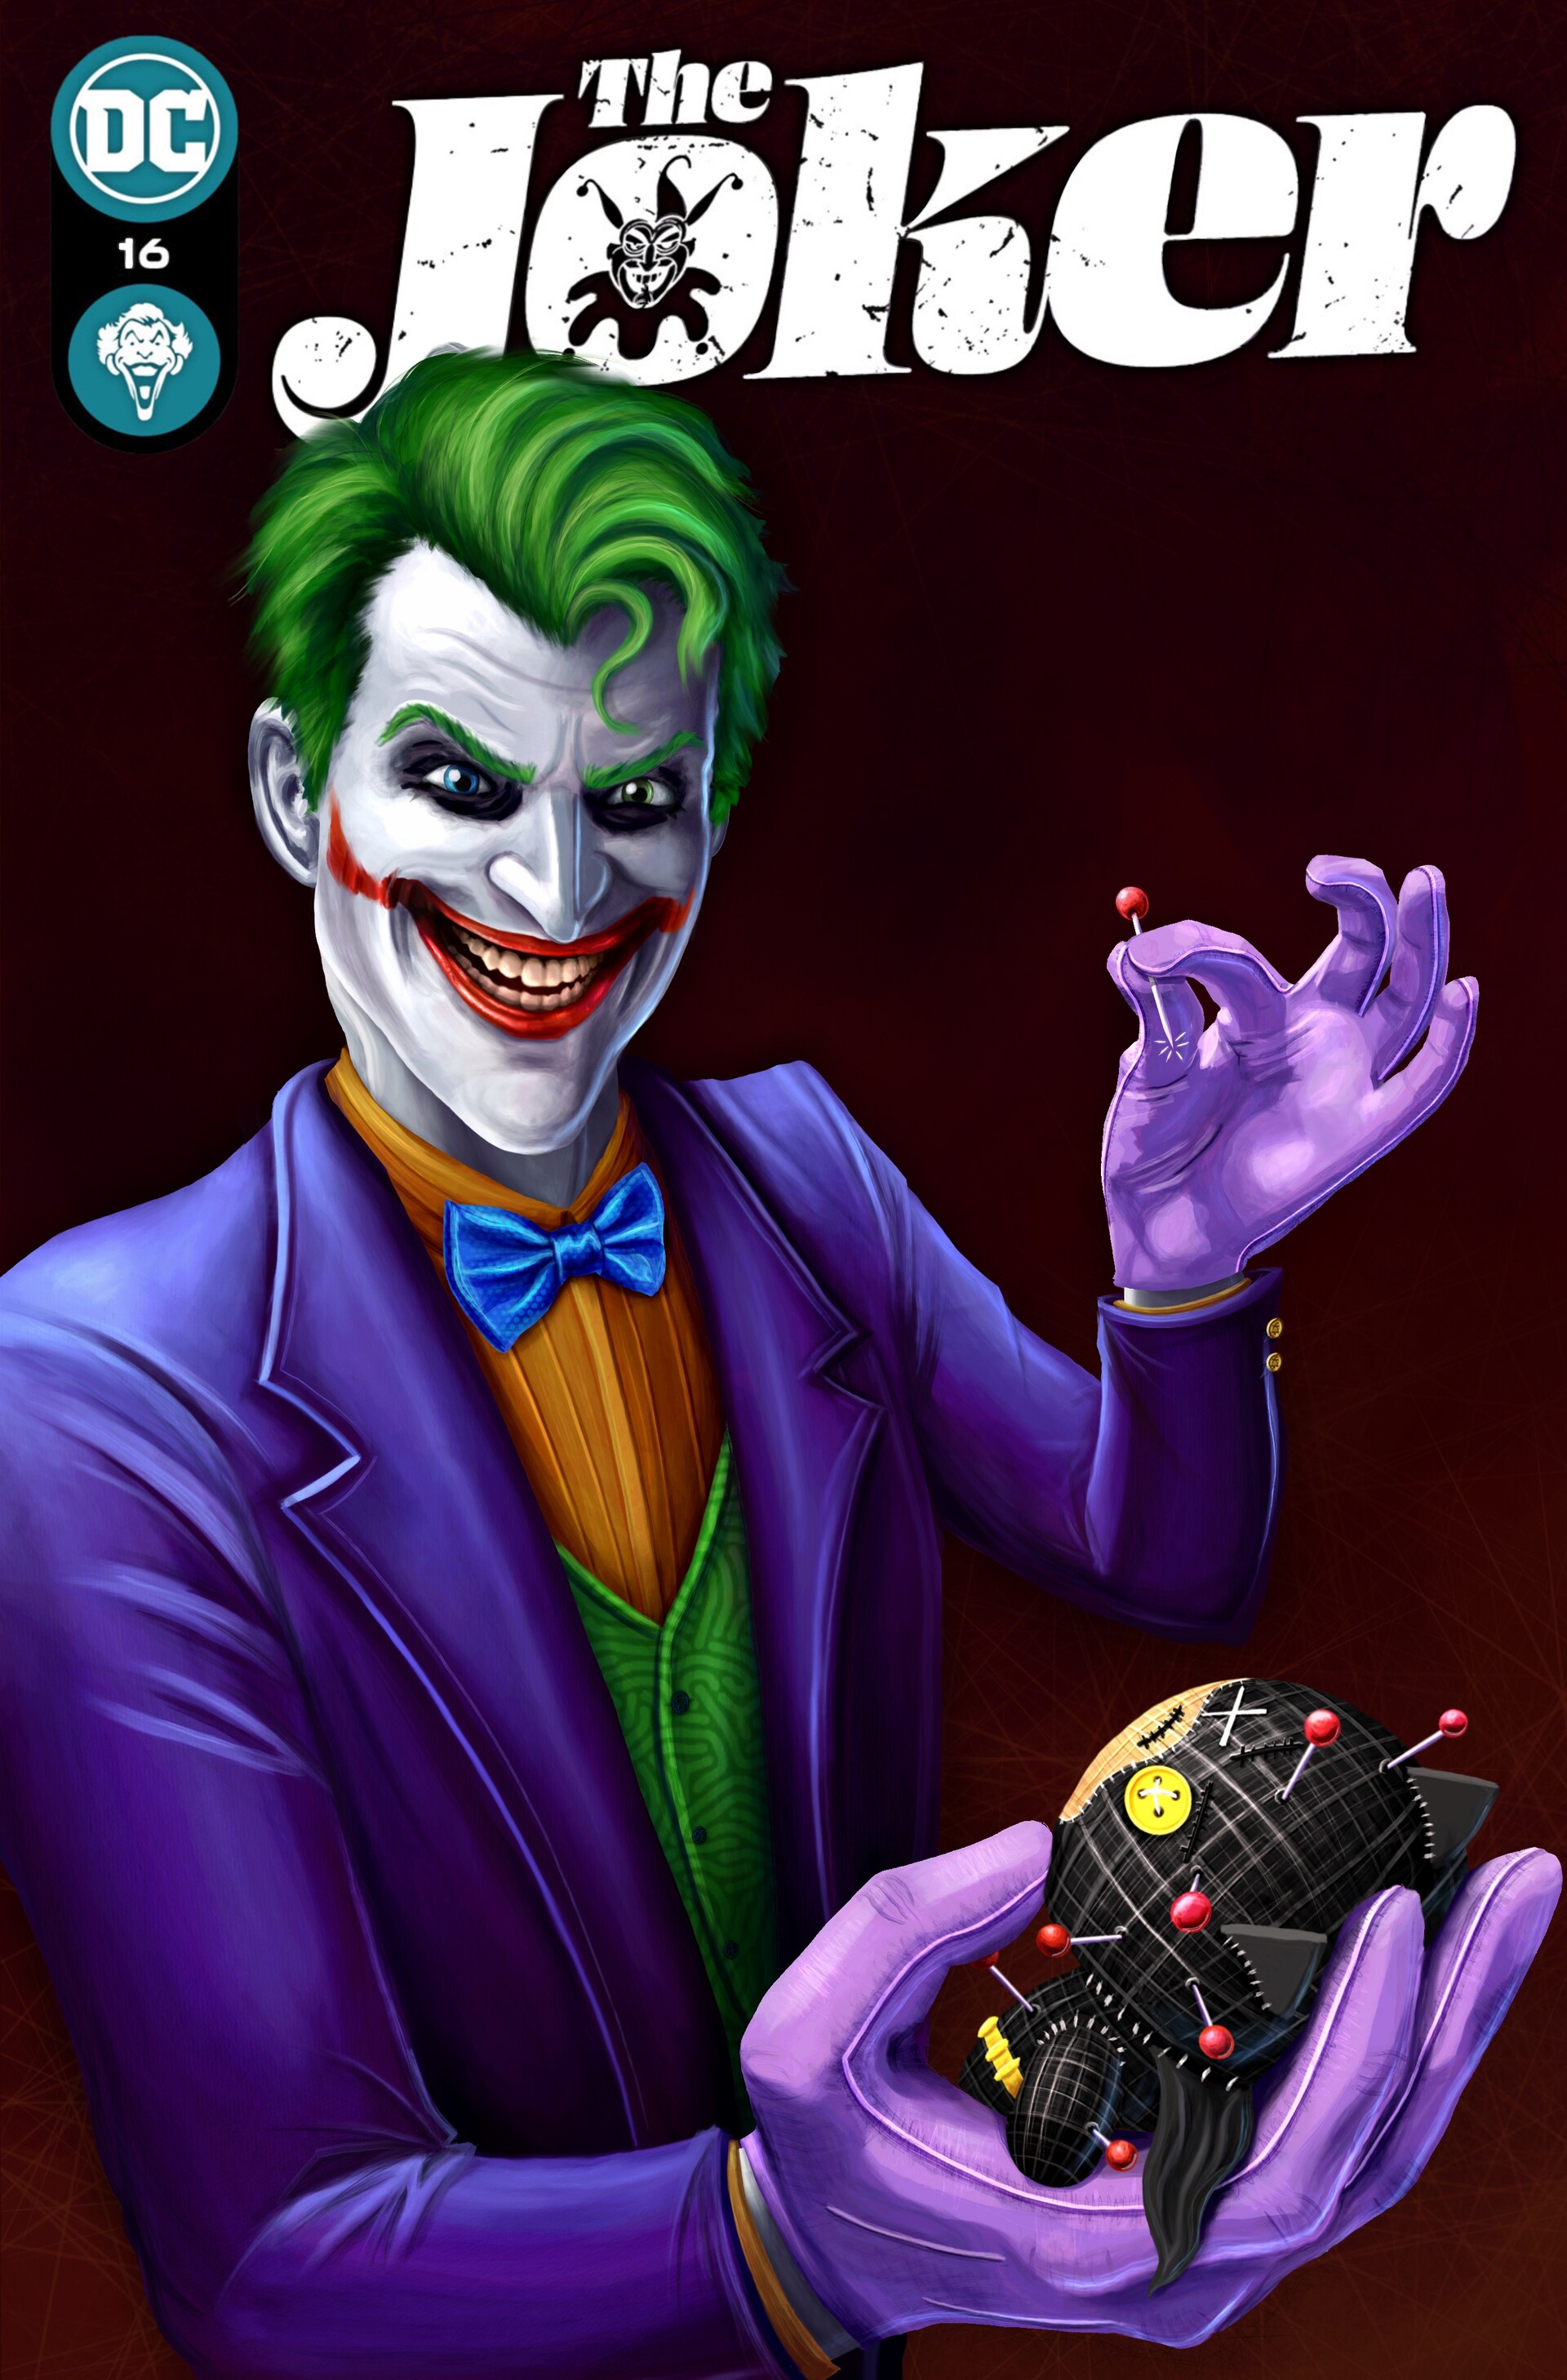 ArtStation - Joker Comic Cover